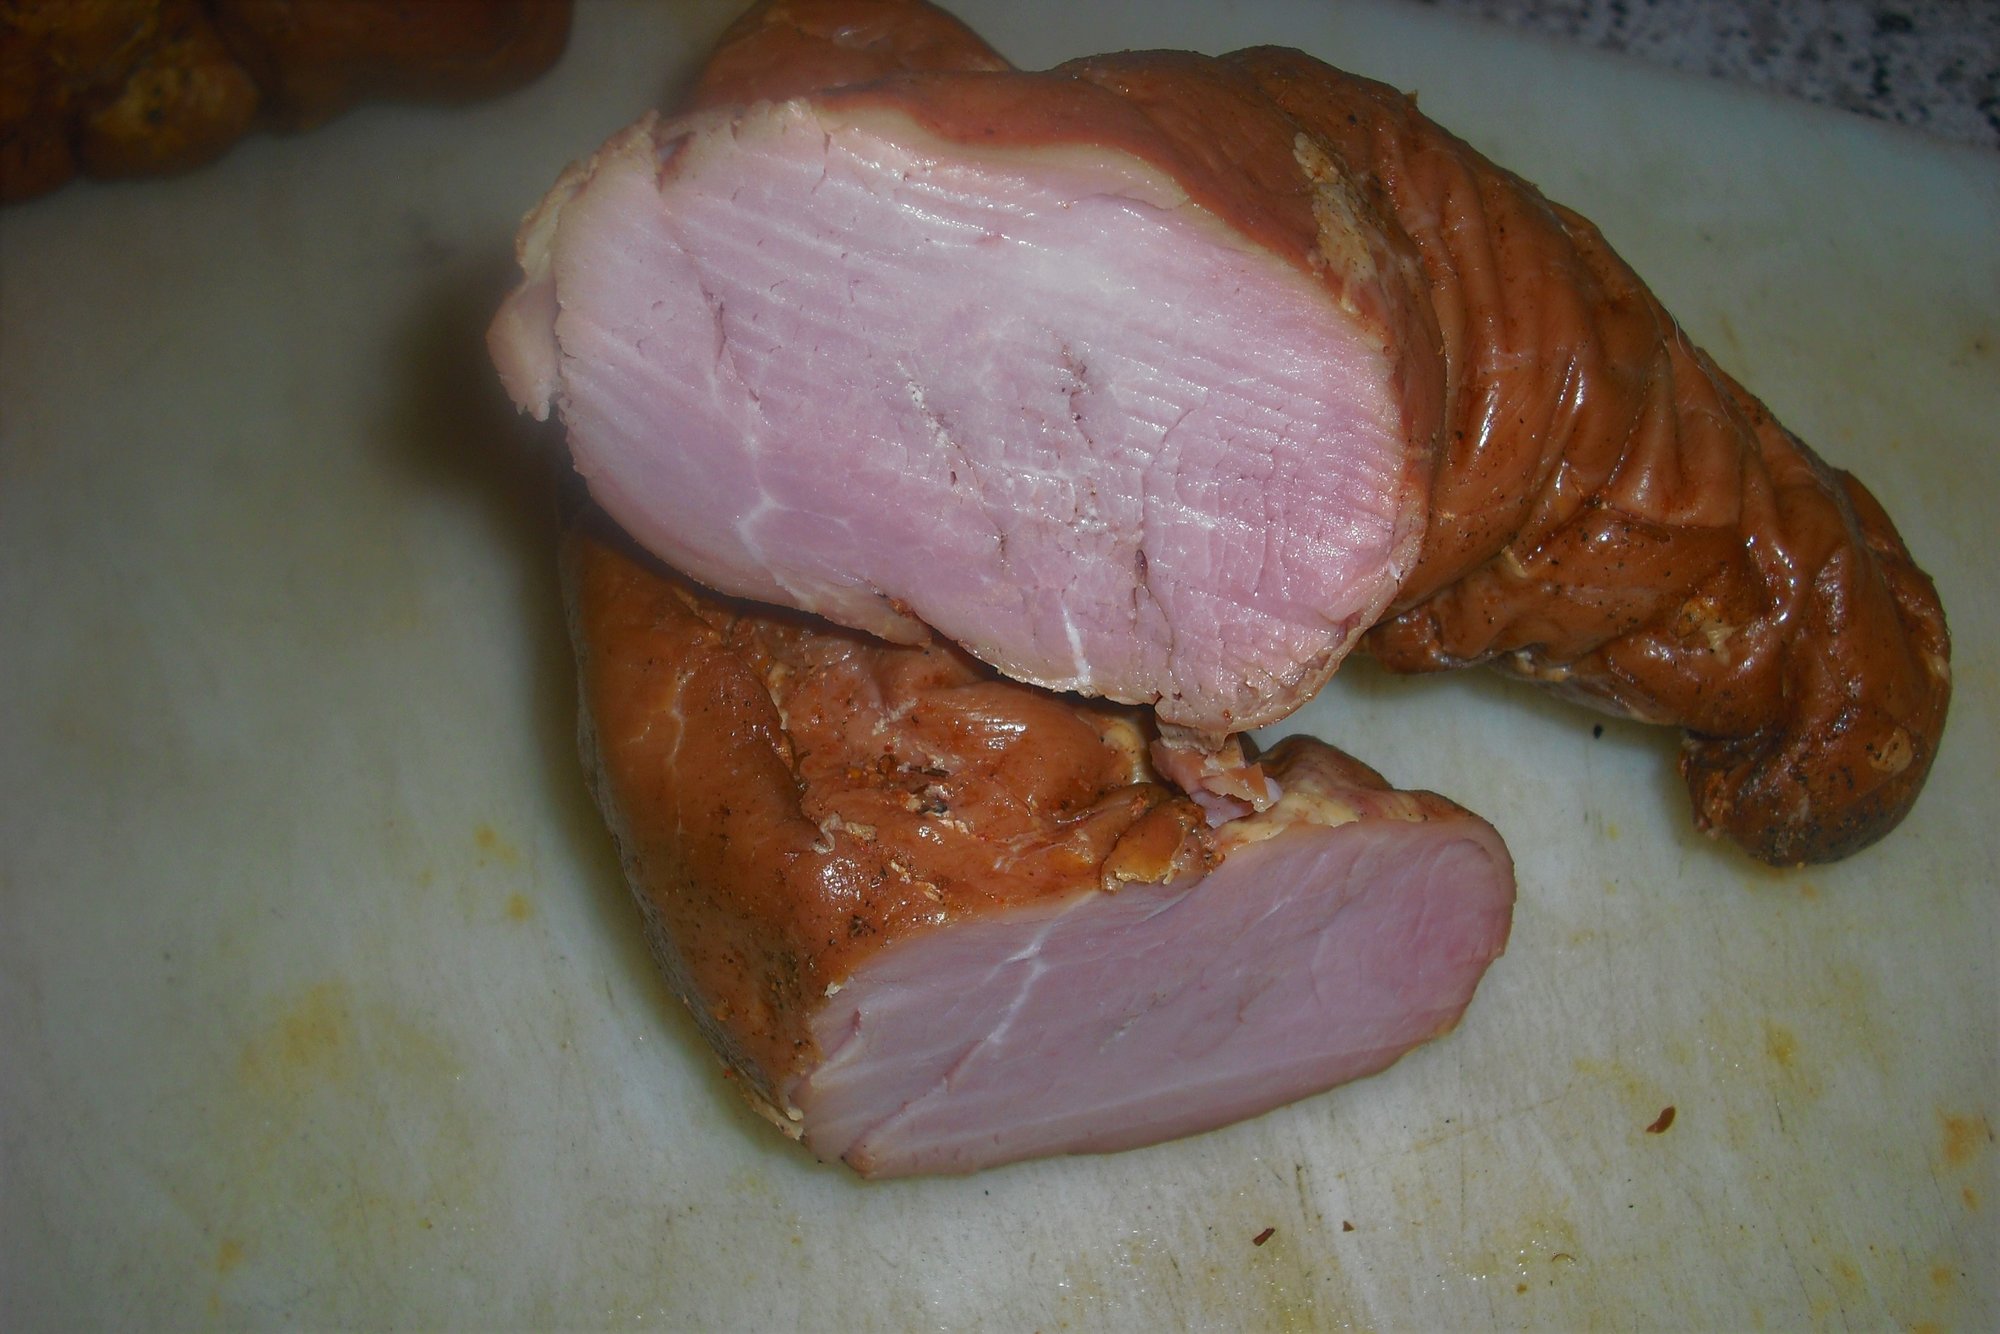 Schweinefilet nach Art eines Kochschinkens | Seite 2 | Grillforum und ...